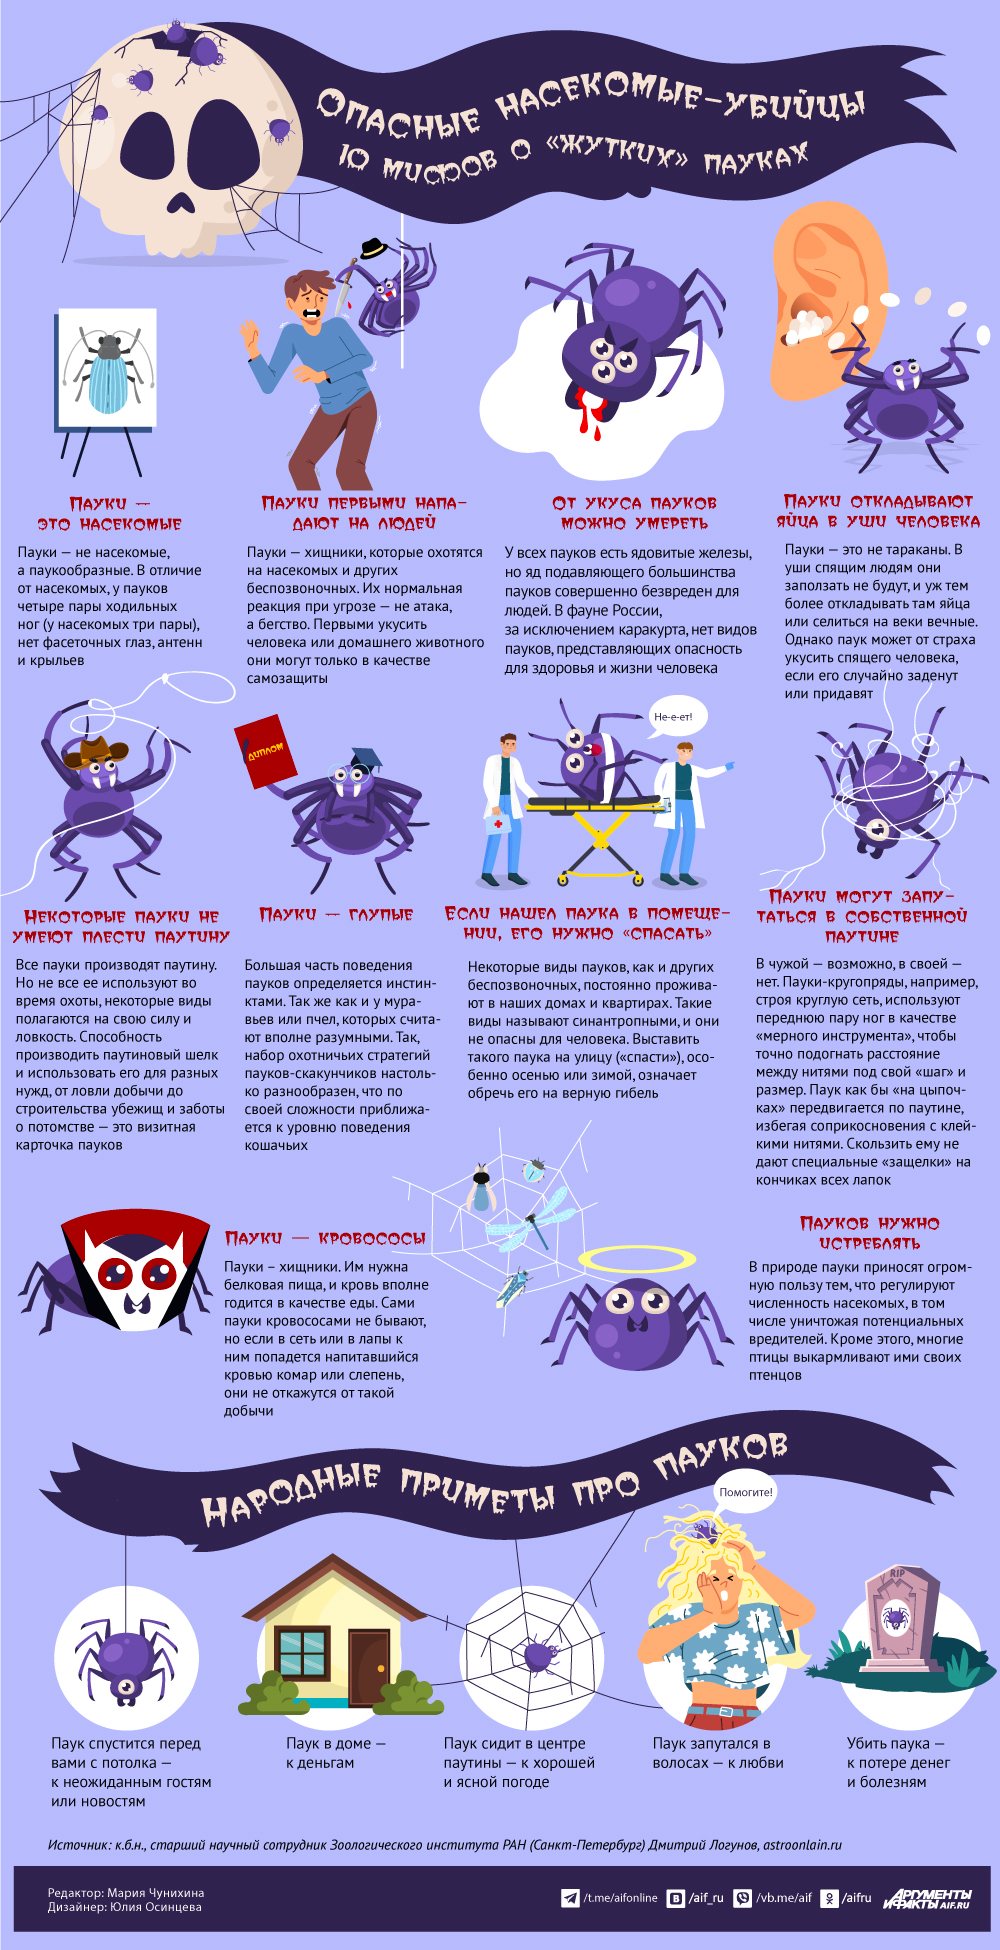 «Опасные насекомые-убийцы»: 10 мифов о «жутких» пауках. Инфографика1